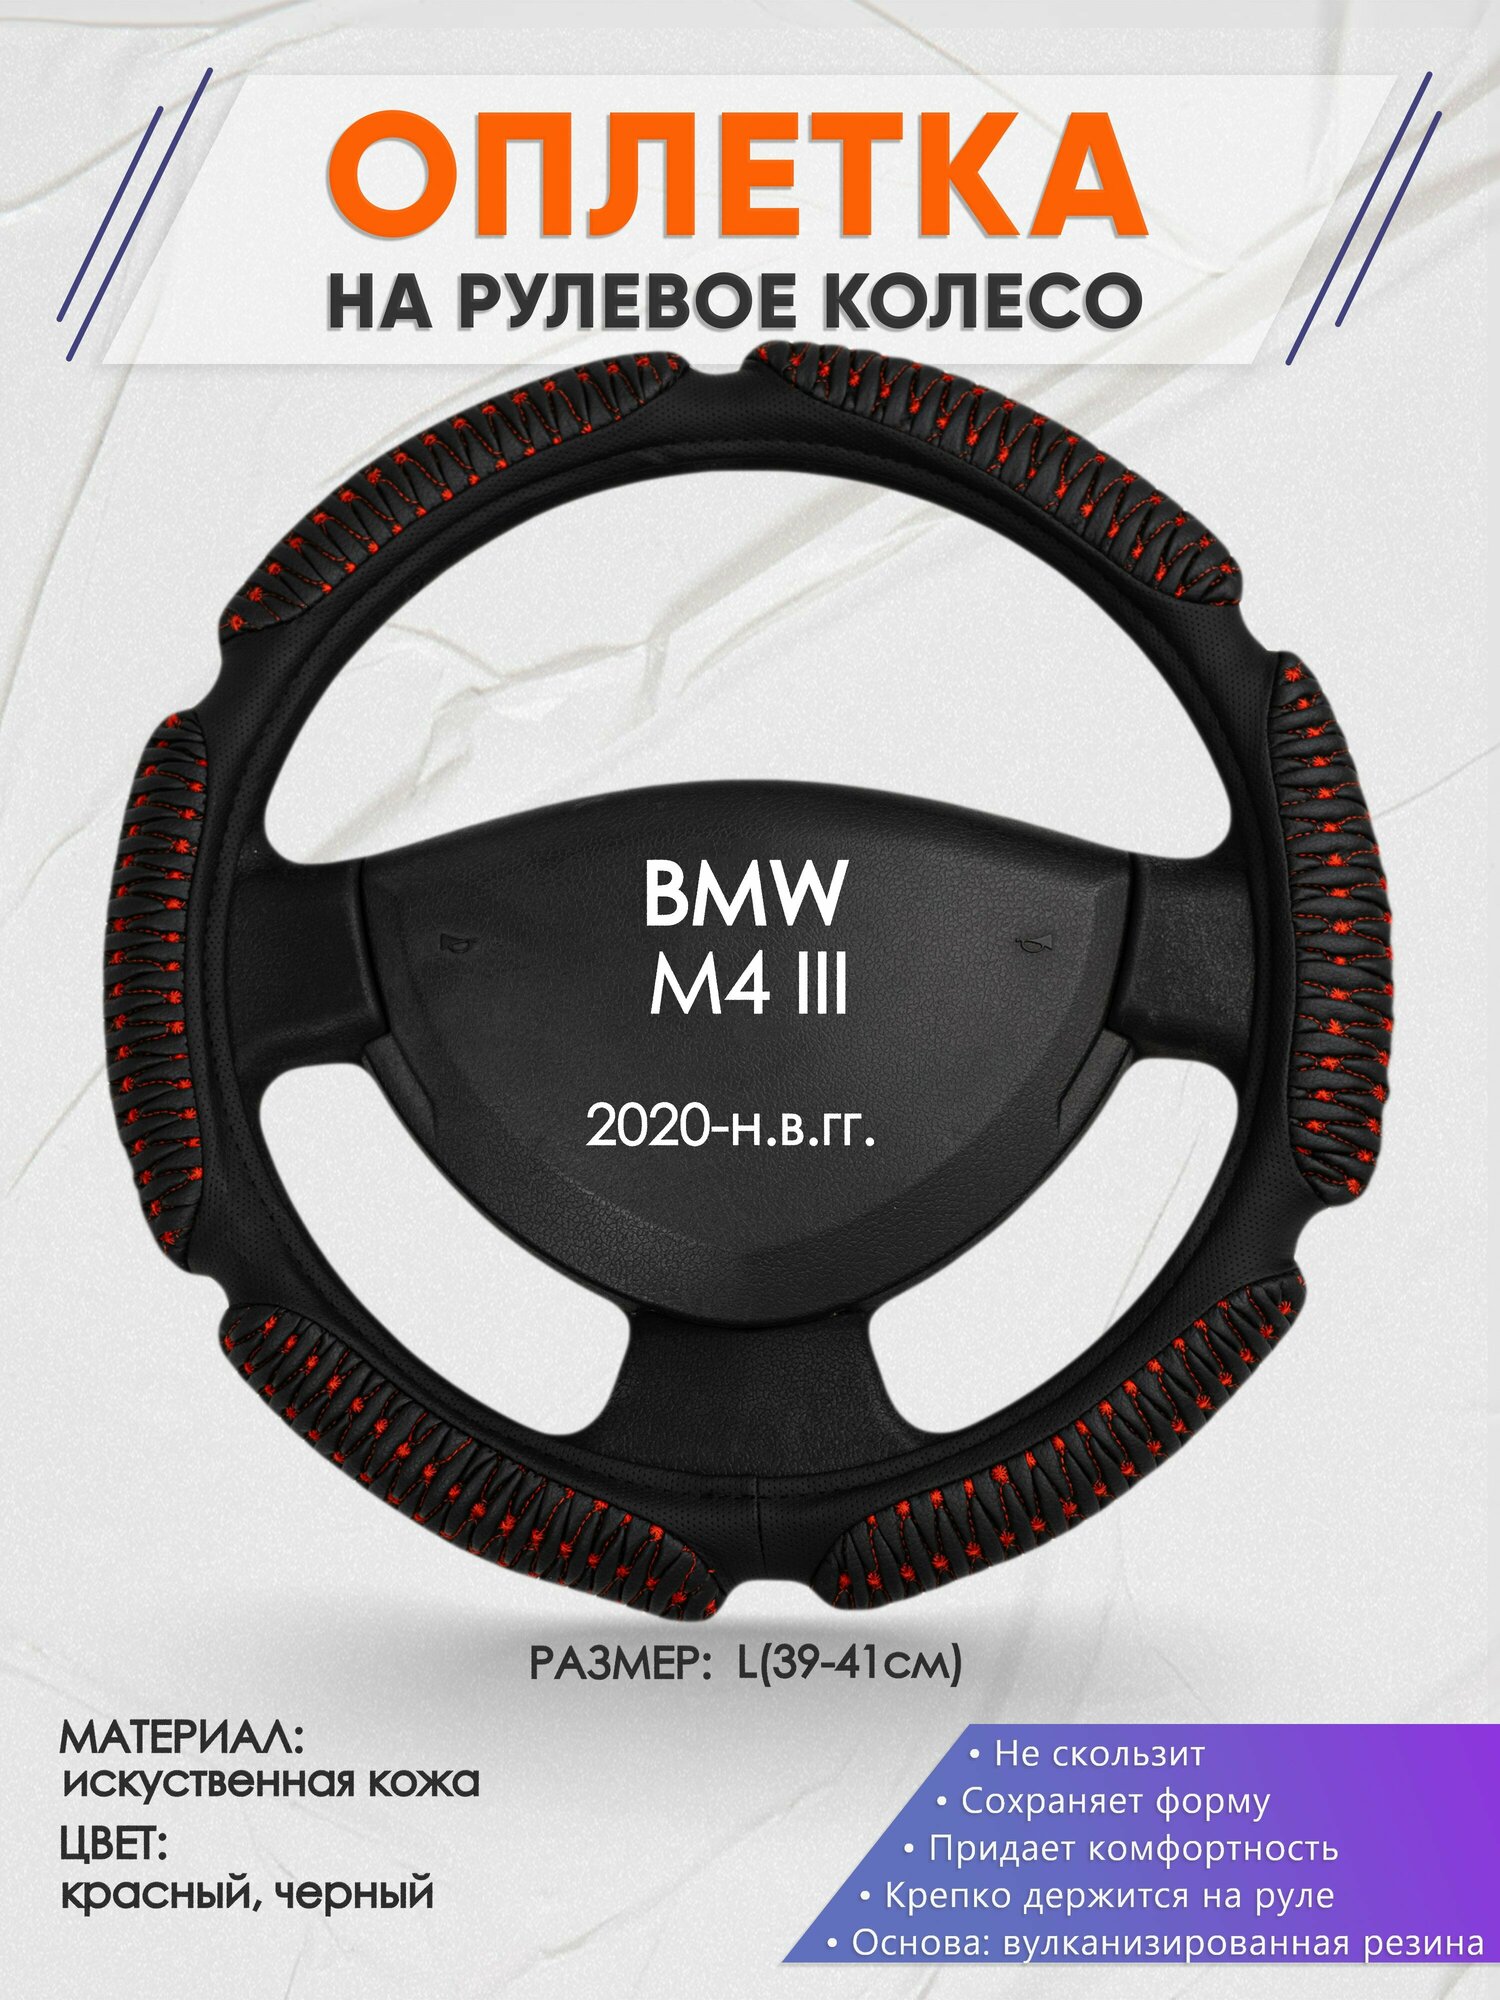 Оплетка на руль для BMW M4 3(БМВ м4) 2020-н. в, L(39-41см), Искусственная кожа 01